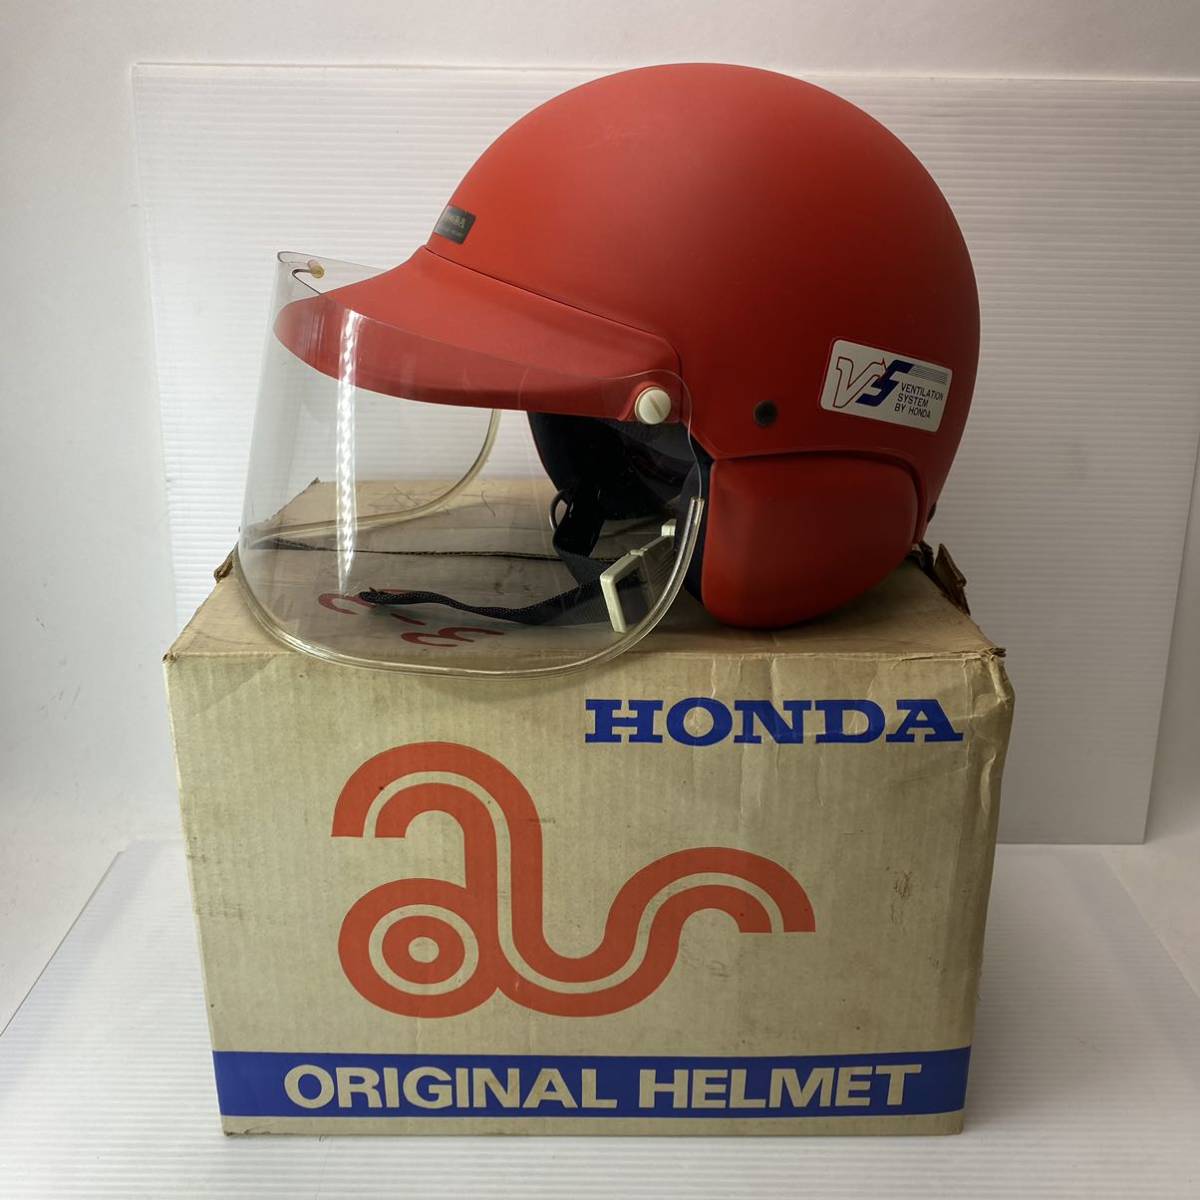 HONDA ホンダ ヘルメット ジェット 半キャップ タイプ 赤 レッド系 レトロ 当時物 バイク用品_画像1